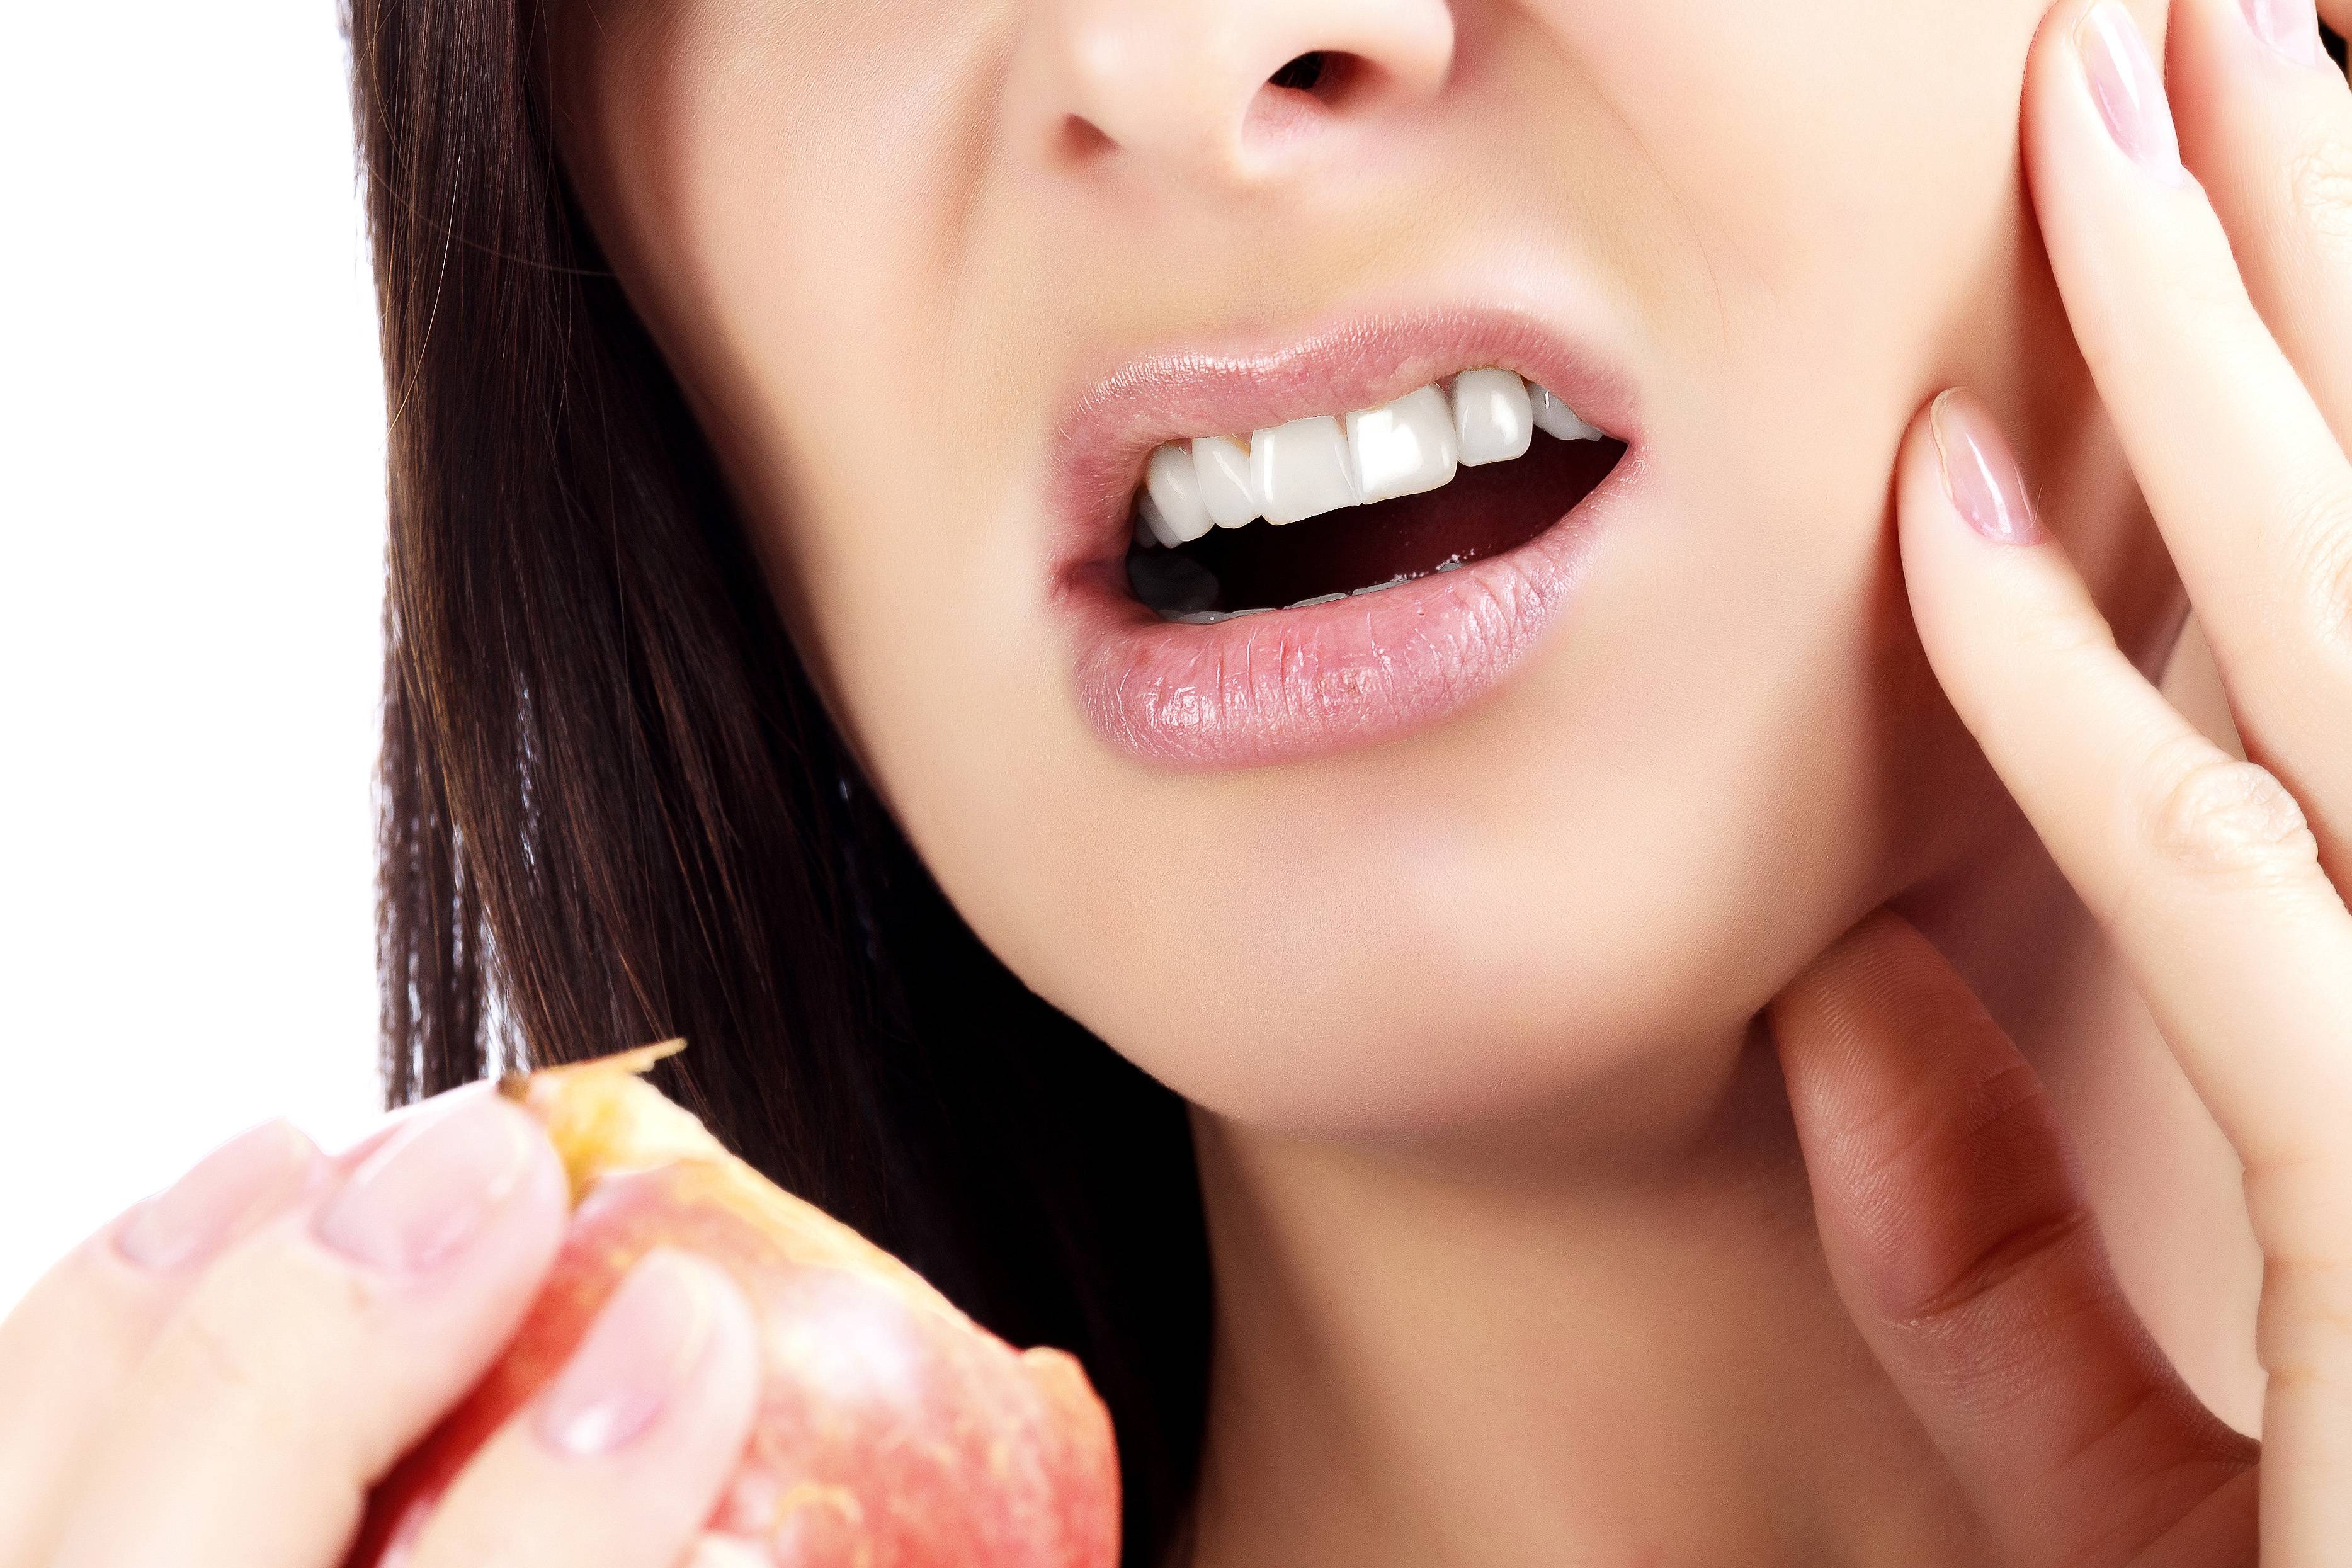 نقش تغذیه در سلامت دندان مشکلات دهان و دندان مزایای فلوراید فلوروزیس دندانی فلوروز چیست آسیب قند و شکر 